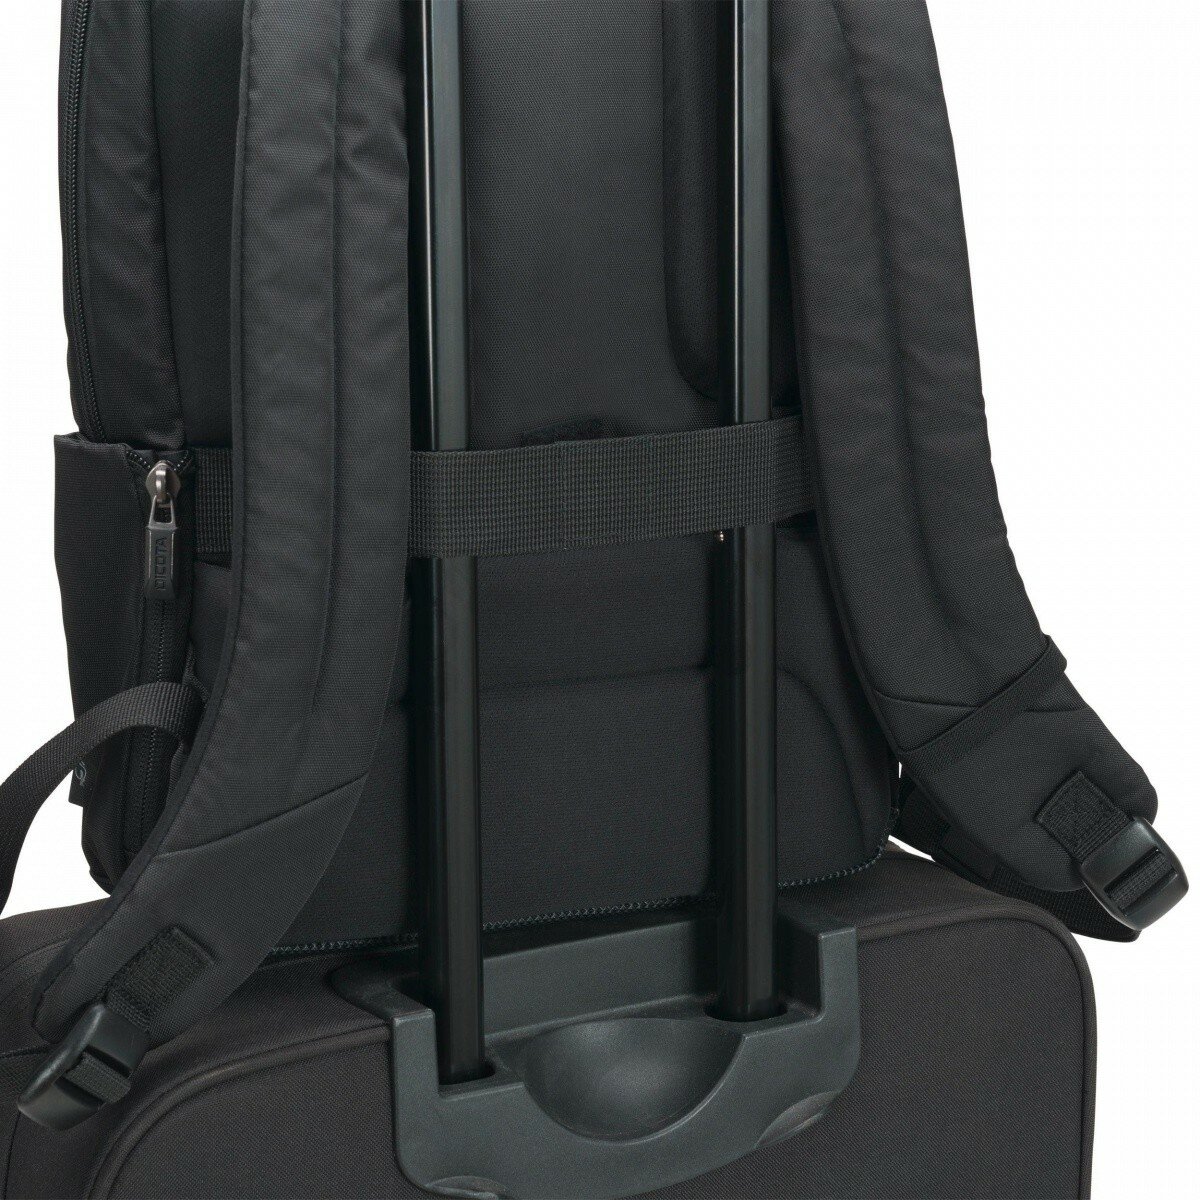 Plecak Dicota Eco Backpack Slim PRO 12-14.1'' czarna D31820 plecak przymocowany do torby podróżnej